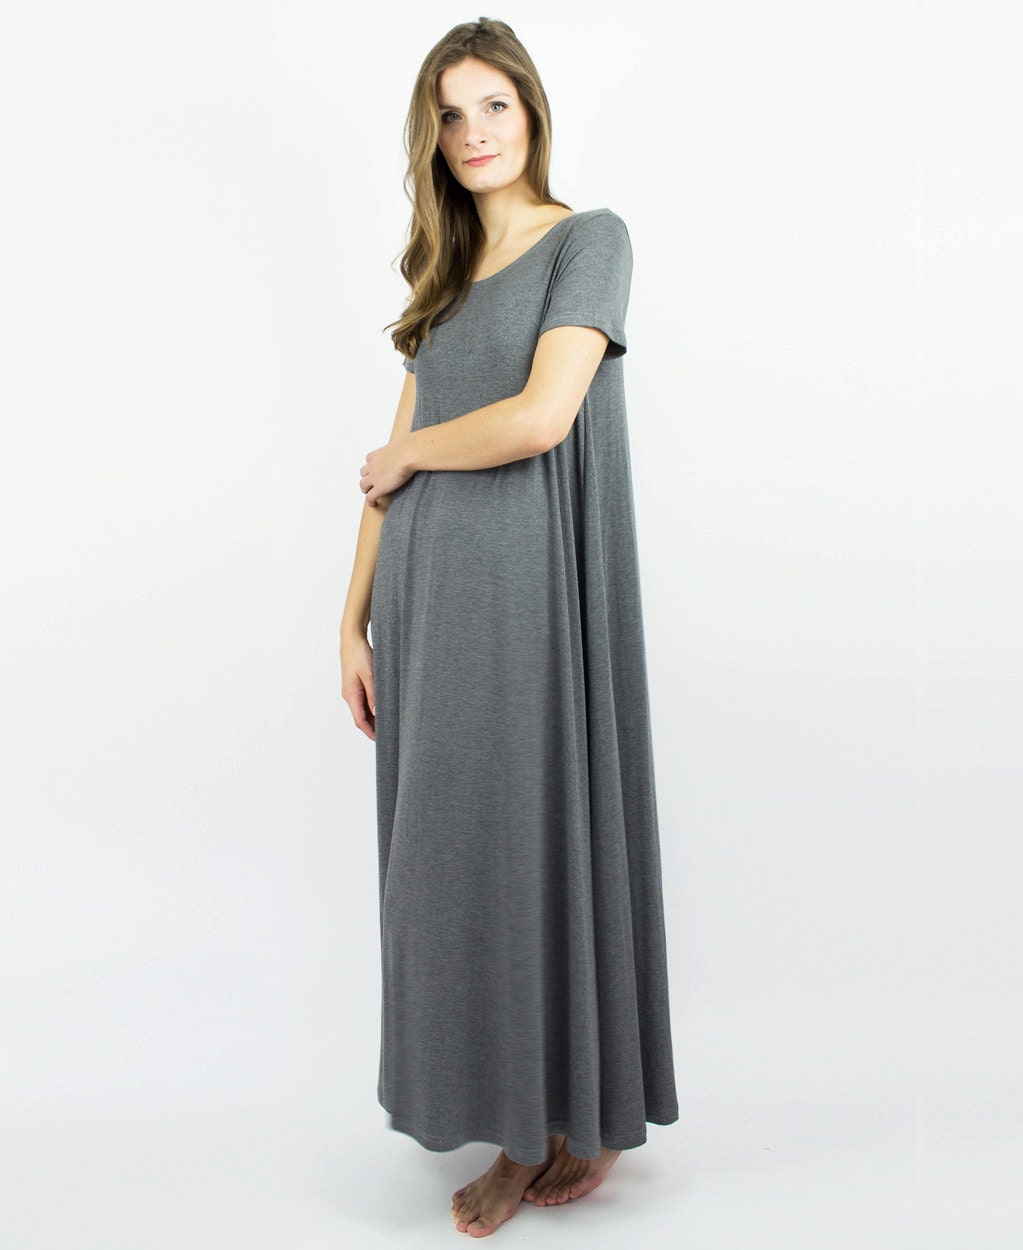 Long Bamboo Nightie luxury Plus Size sleepwear Maternity | Etsy